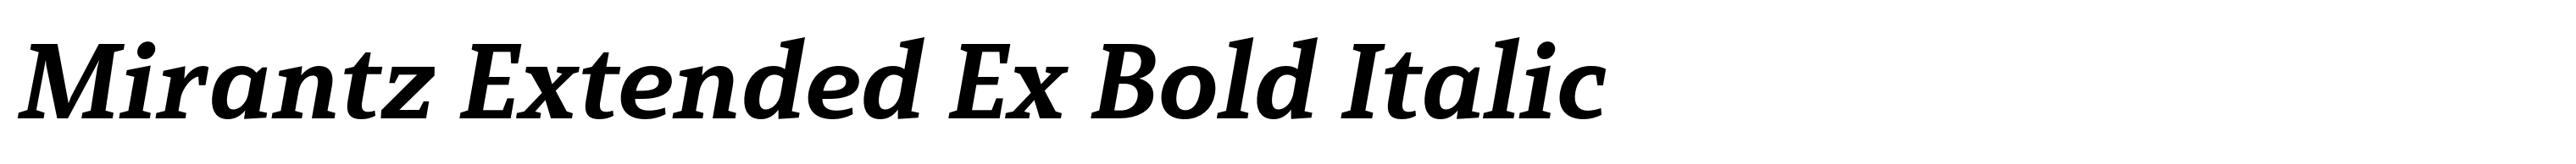 Mirantz Extended Ex Bold Italic